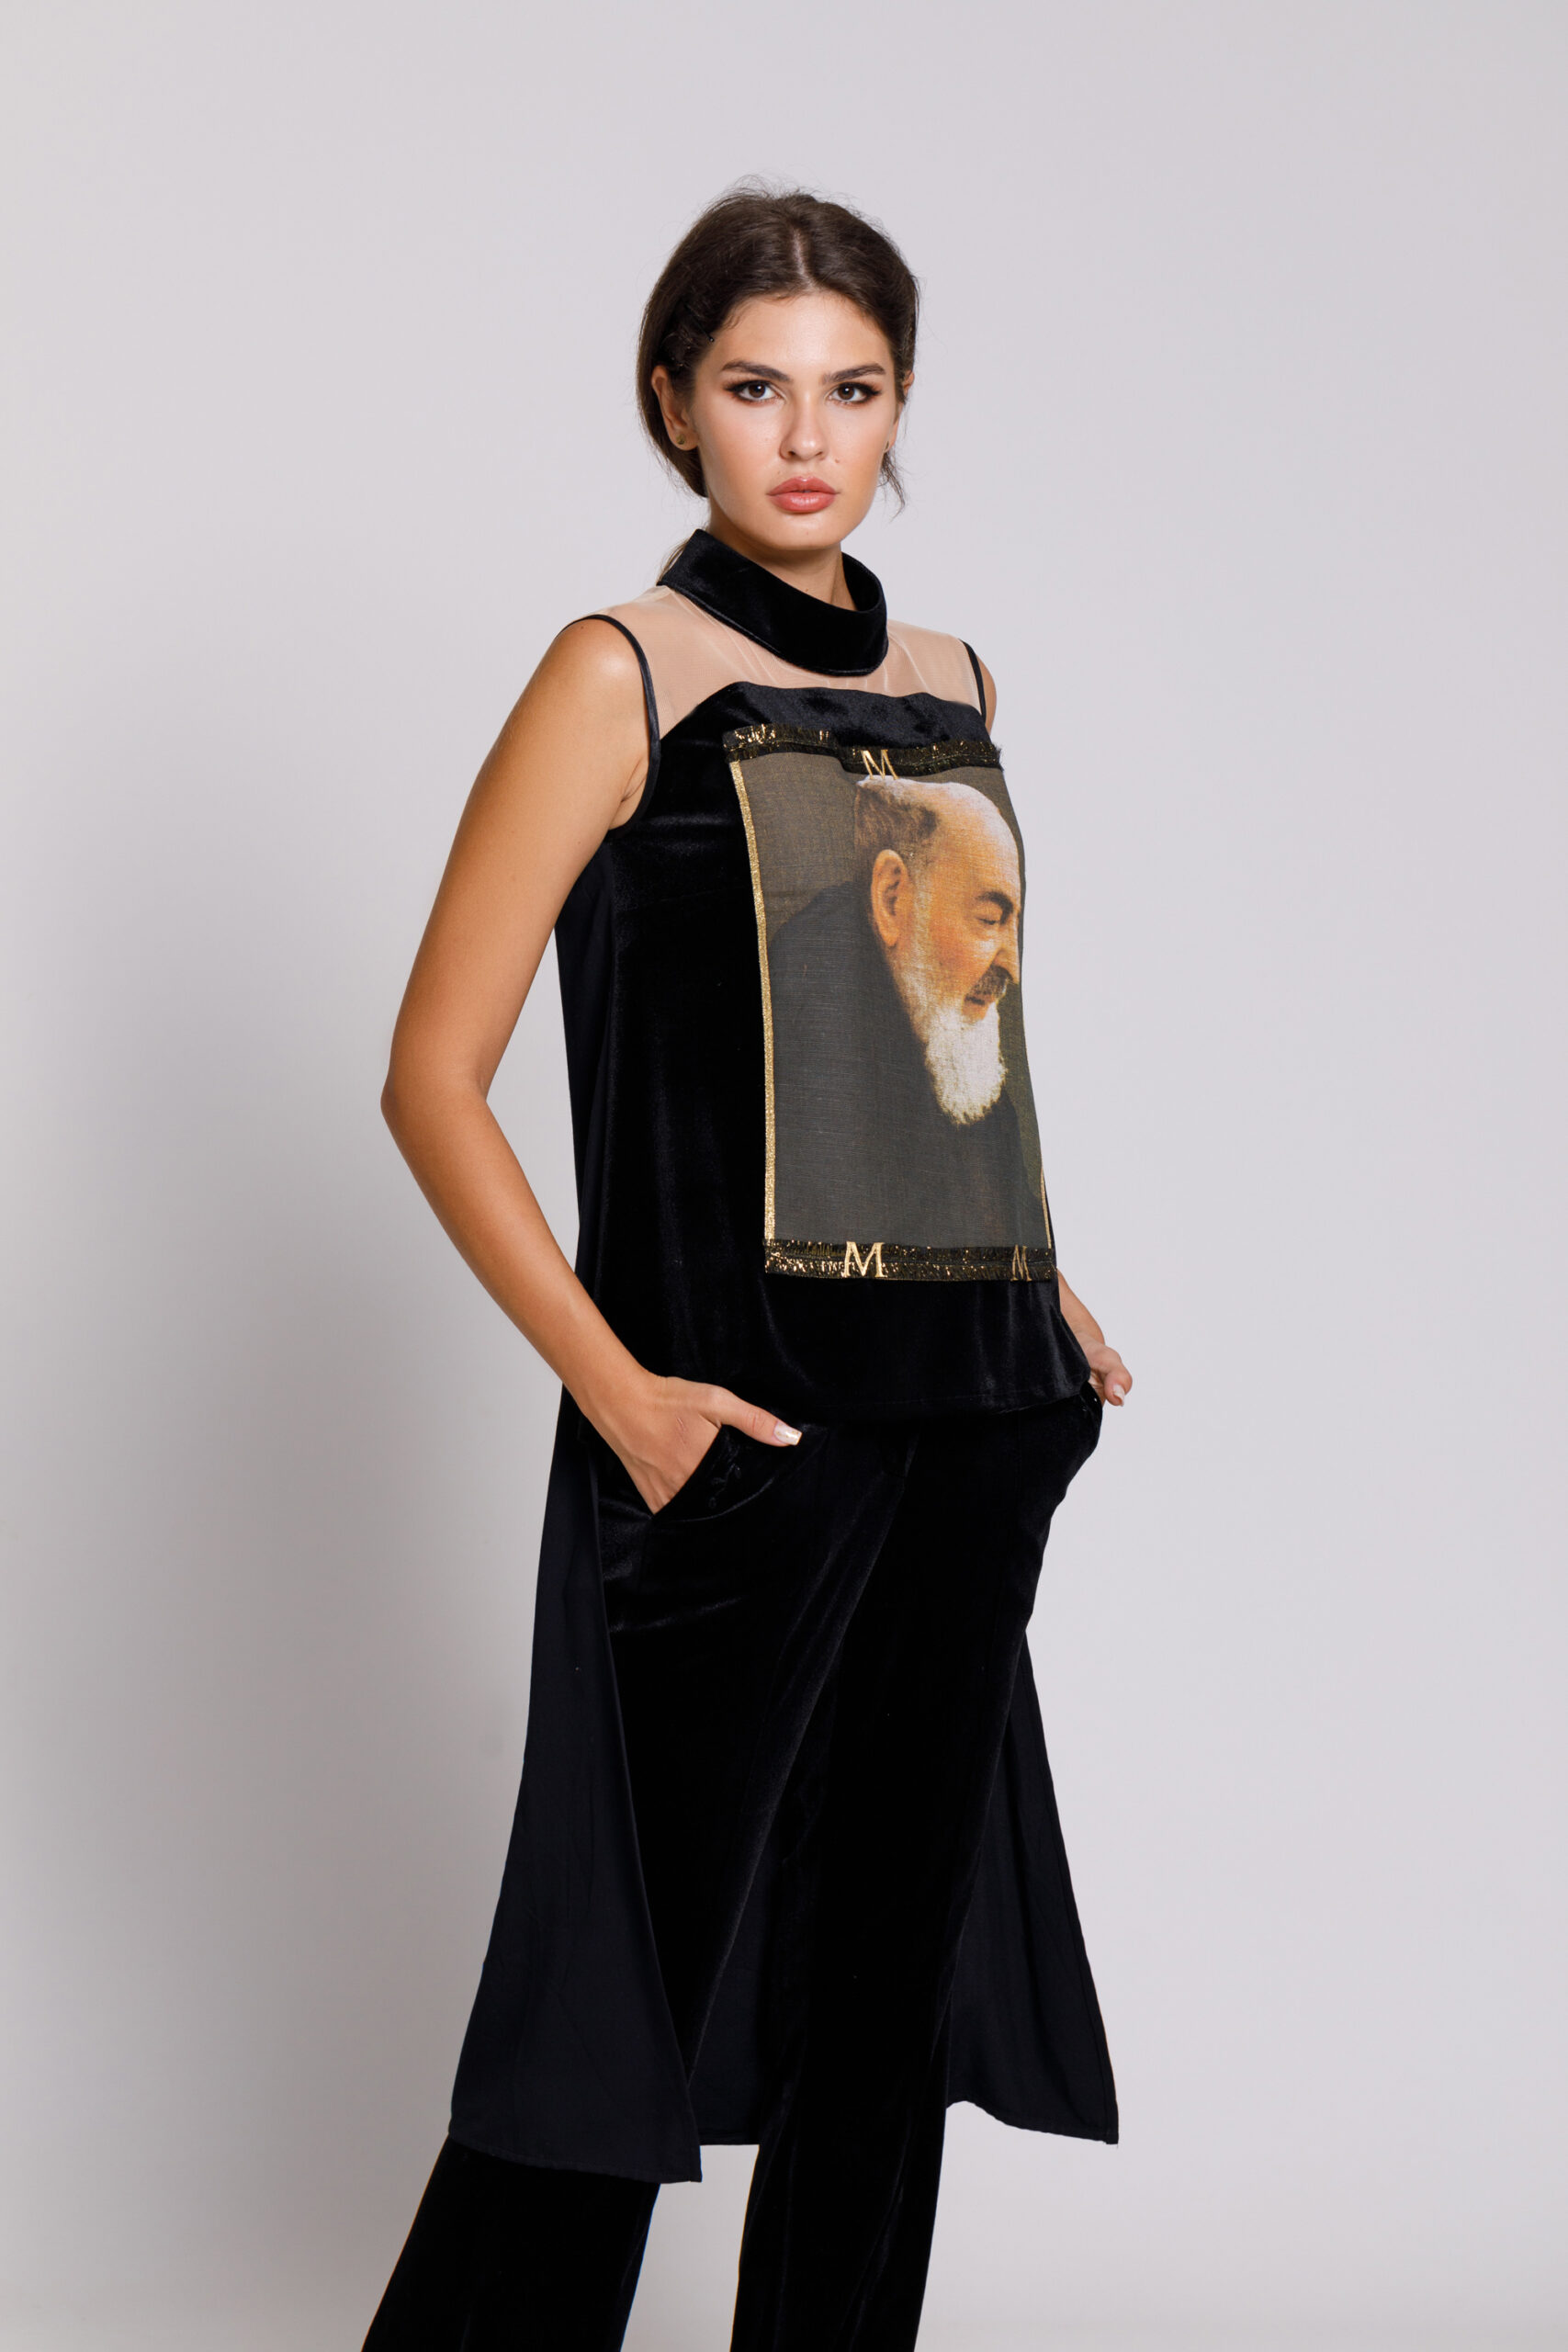 Bluza PAPY eleganta neagra cu aplicatie tip tablou. Materiale naturale, design unicat, cu broderie si aplicatii handmade